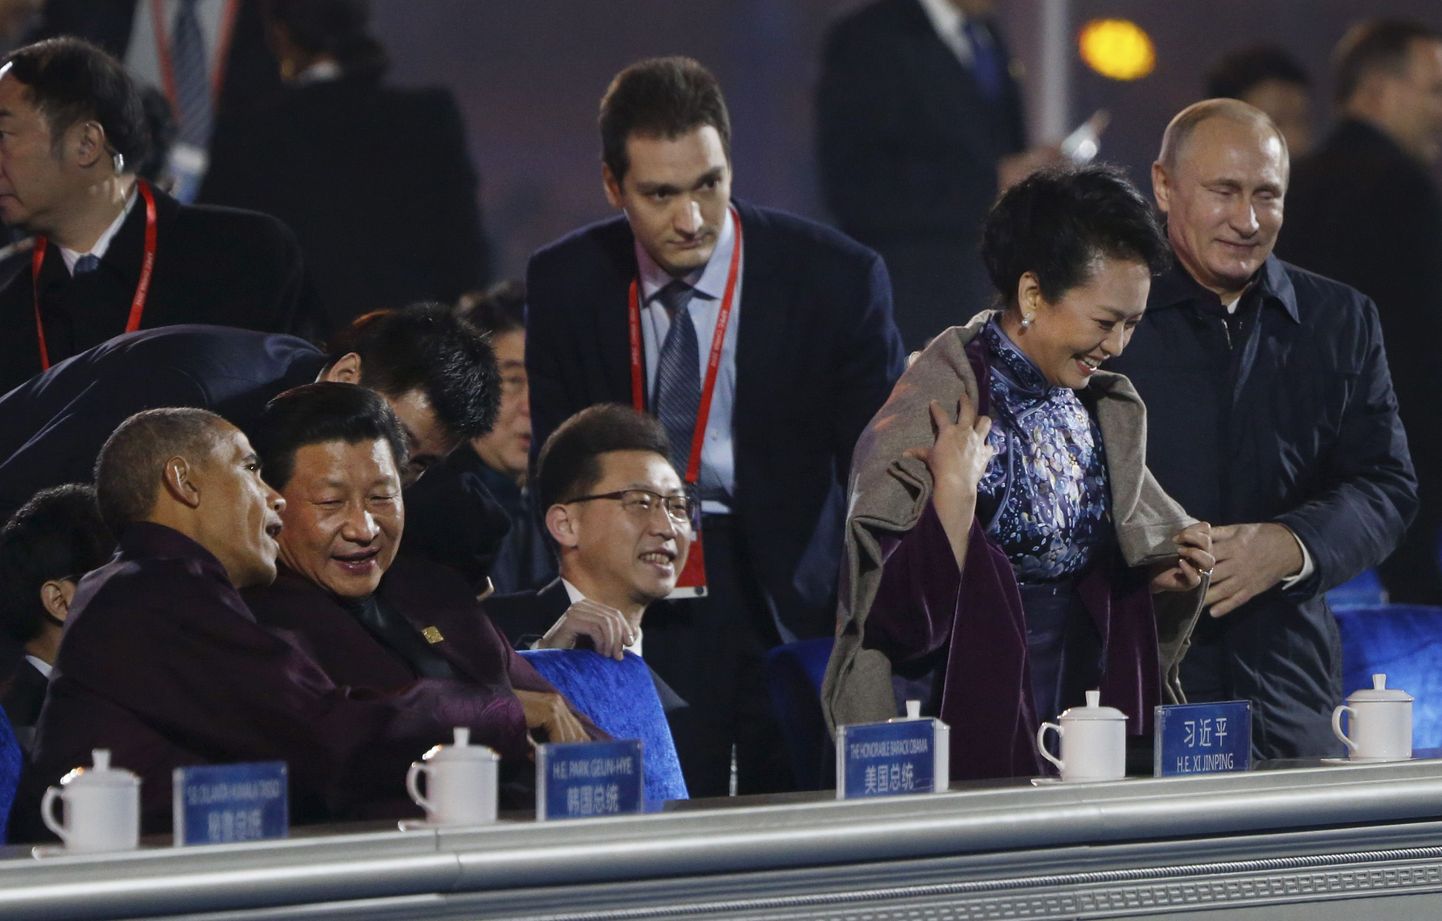 Путин подал плед жене Си Цзиньпина, шокировав Китай и вызвав пересуды в СМИ.